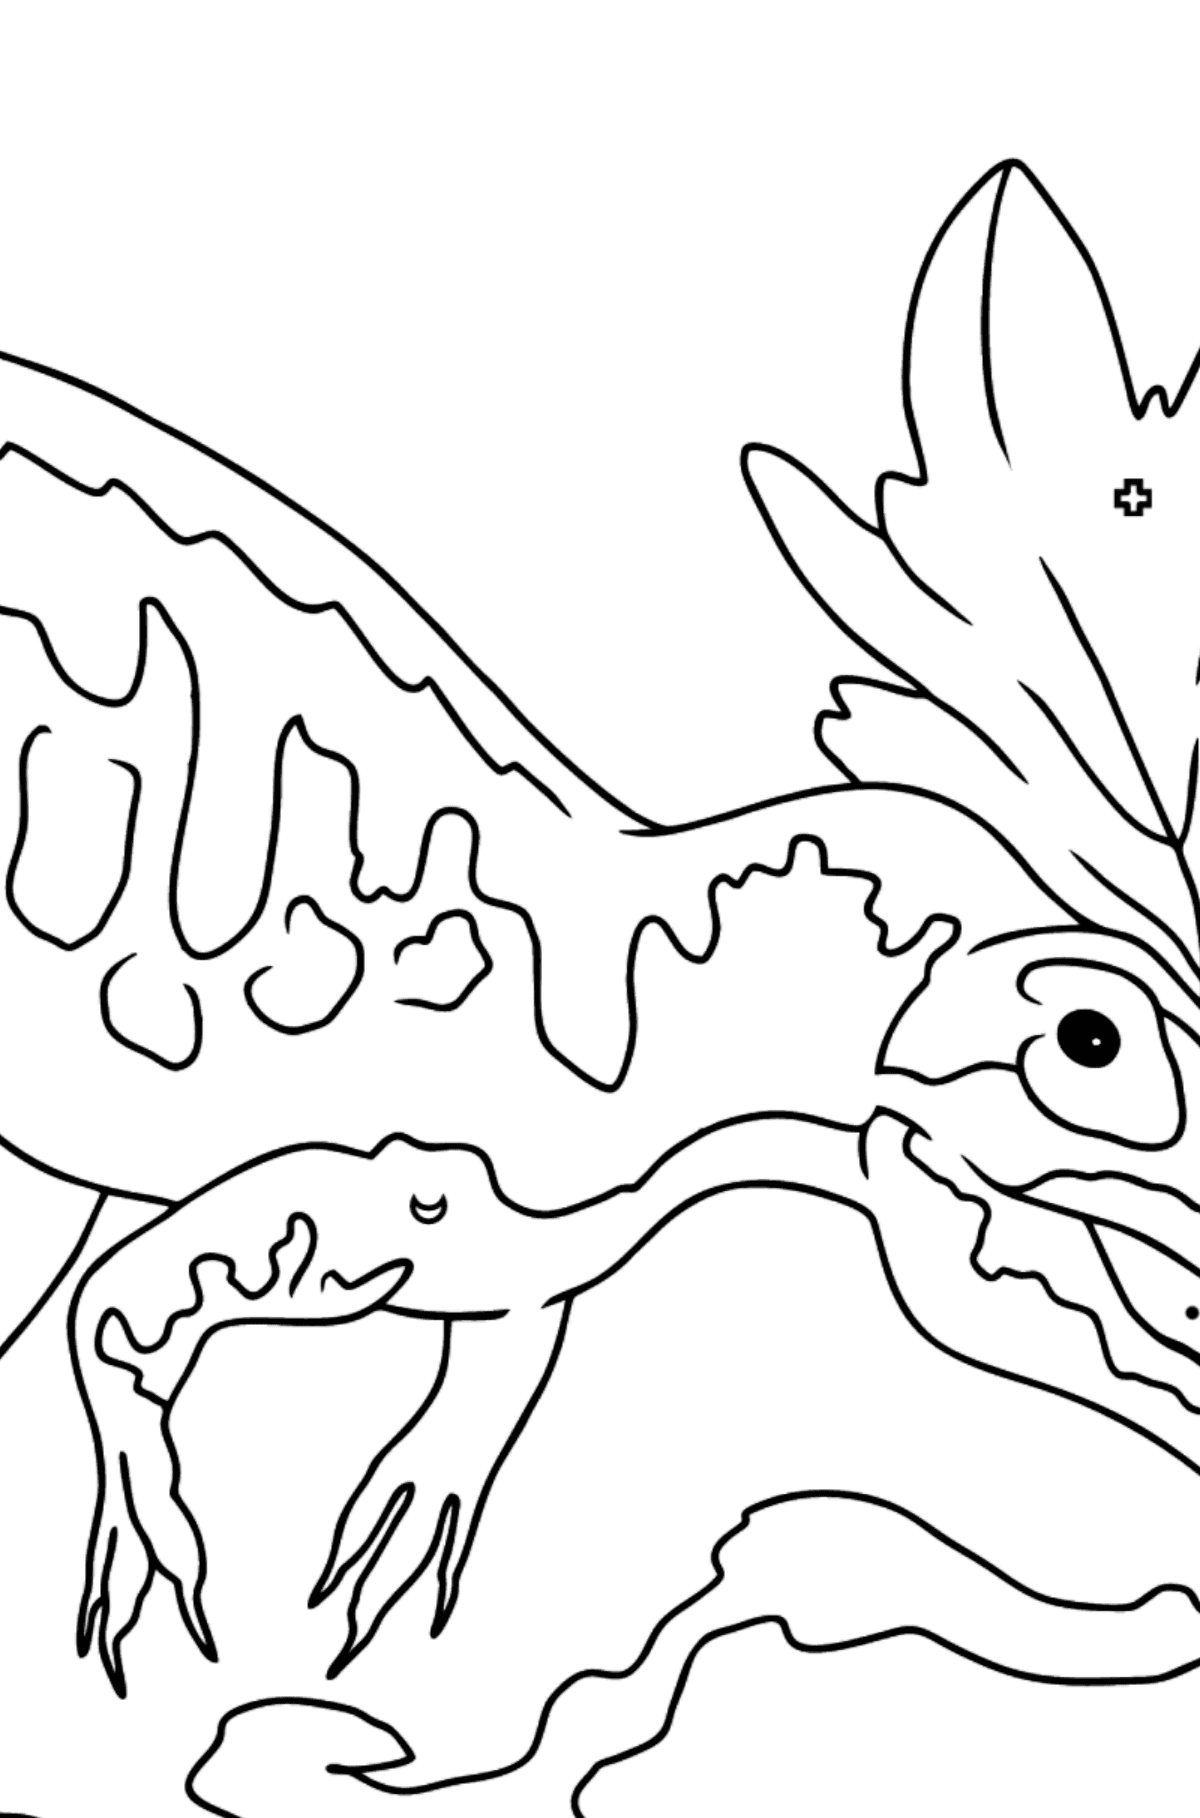 Dibujo para colorear de alosaurio (fácil) - Colorear por Símbolos para Niños